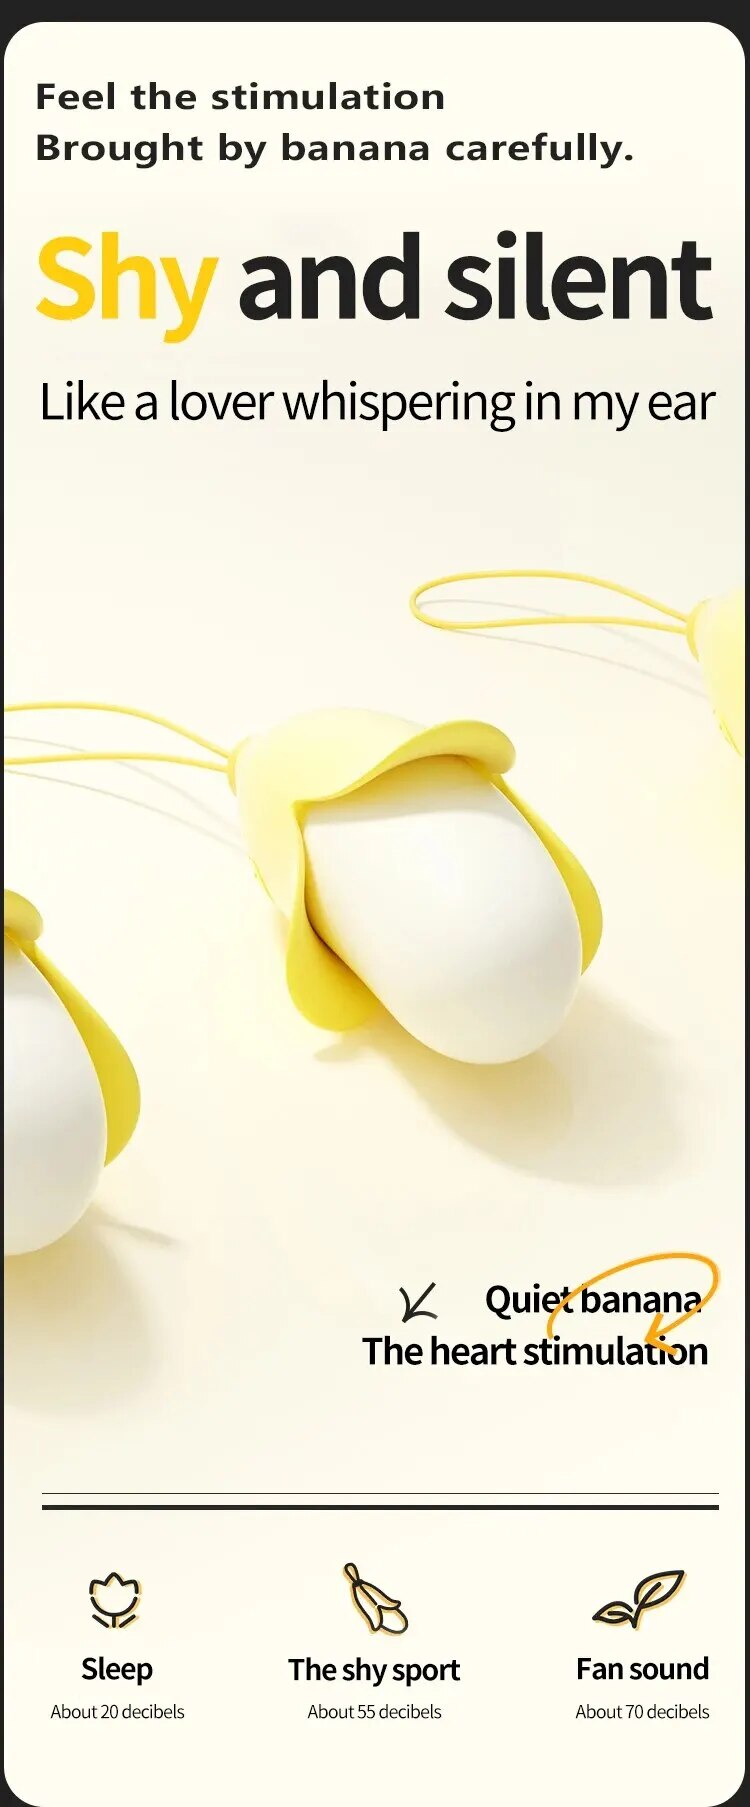 Kho sỉ Trứng rung mini nhỏ gọn hình quả chuối vàng silicon siêu mềm tốt nhất